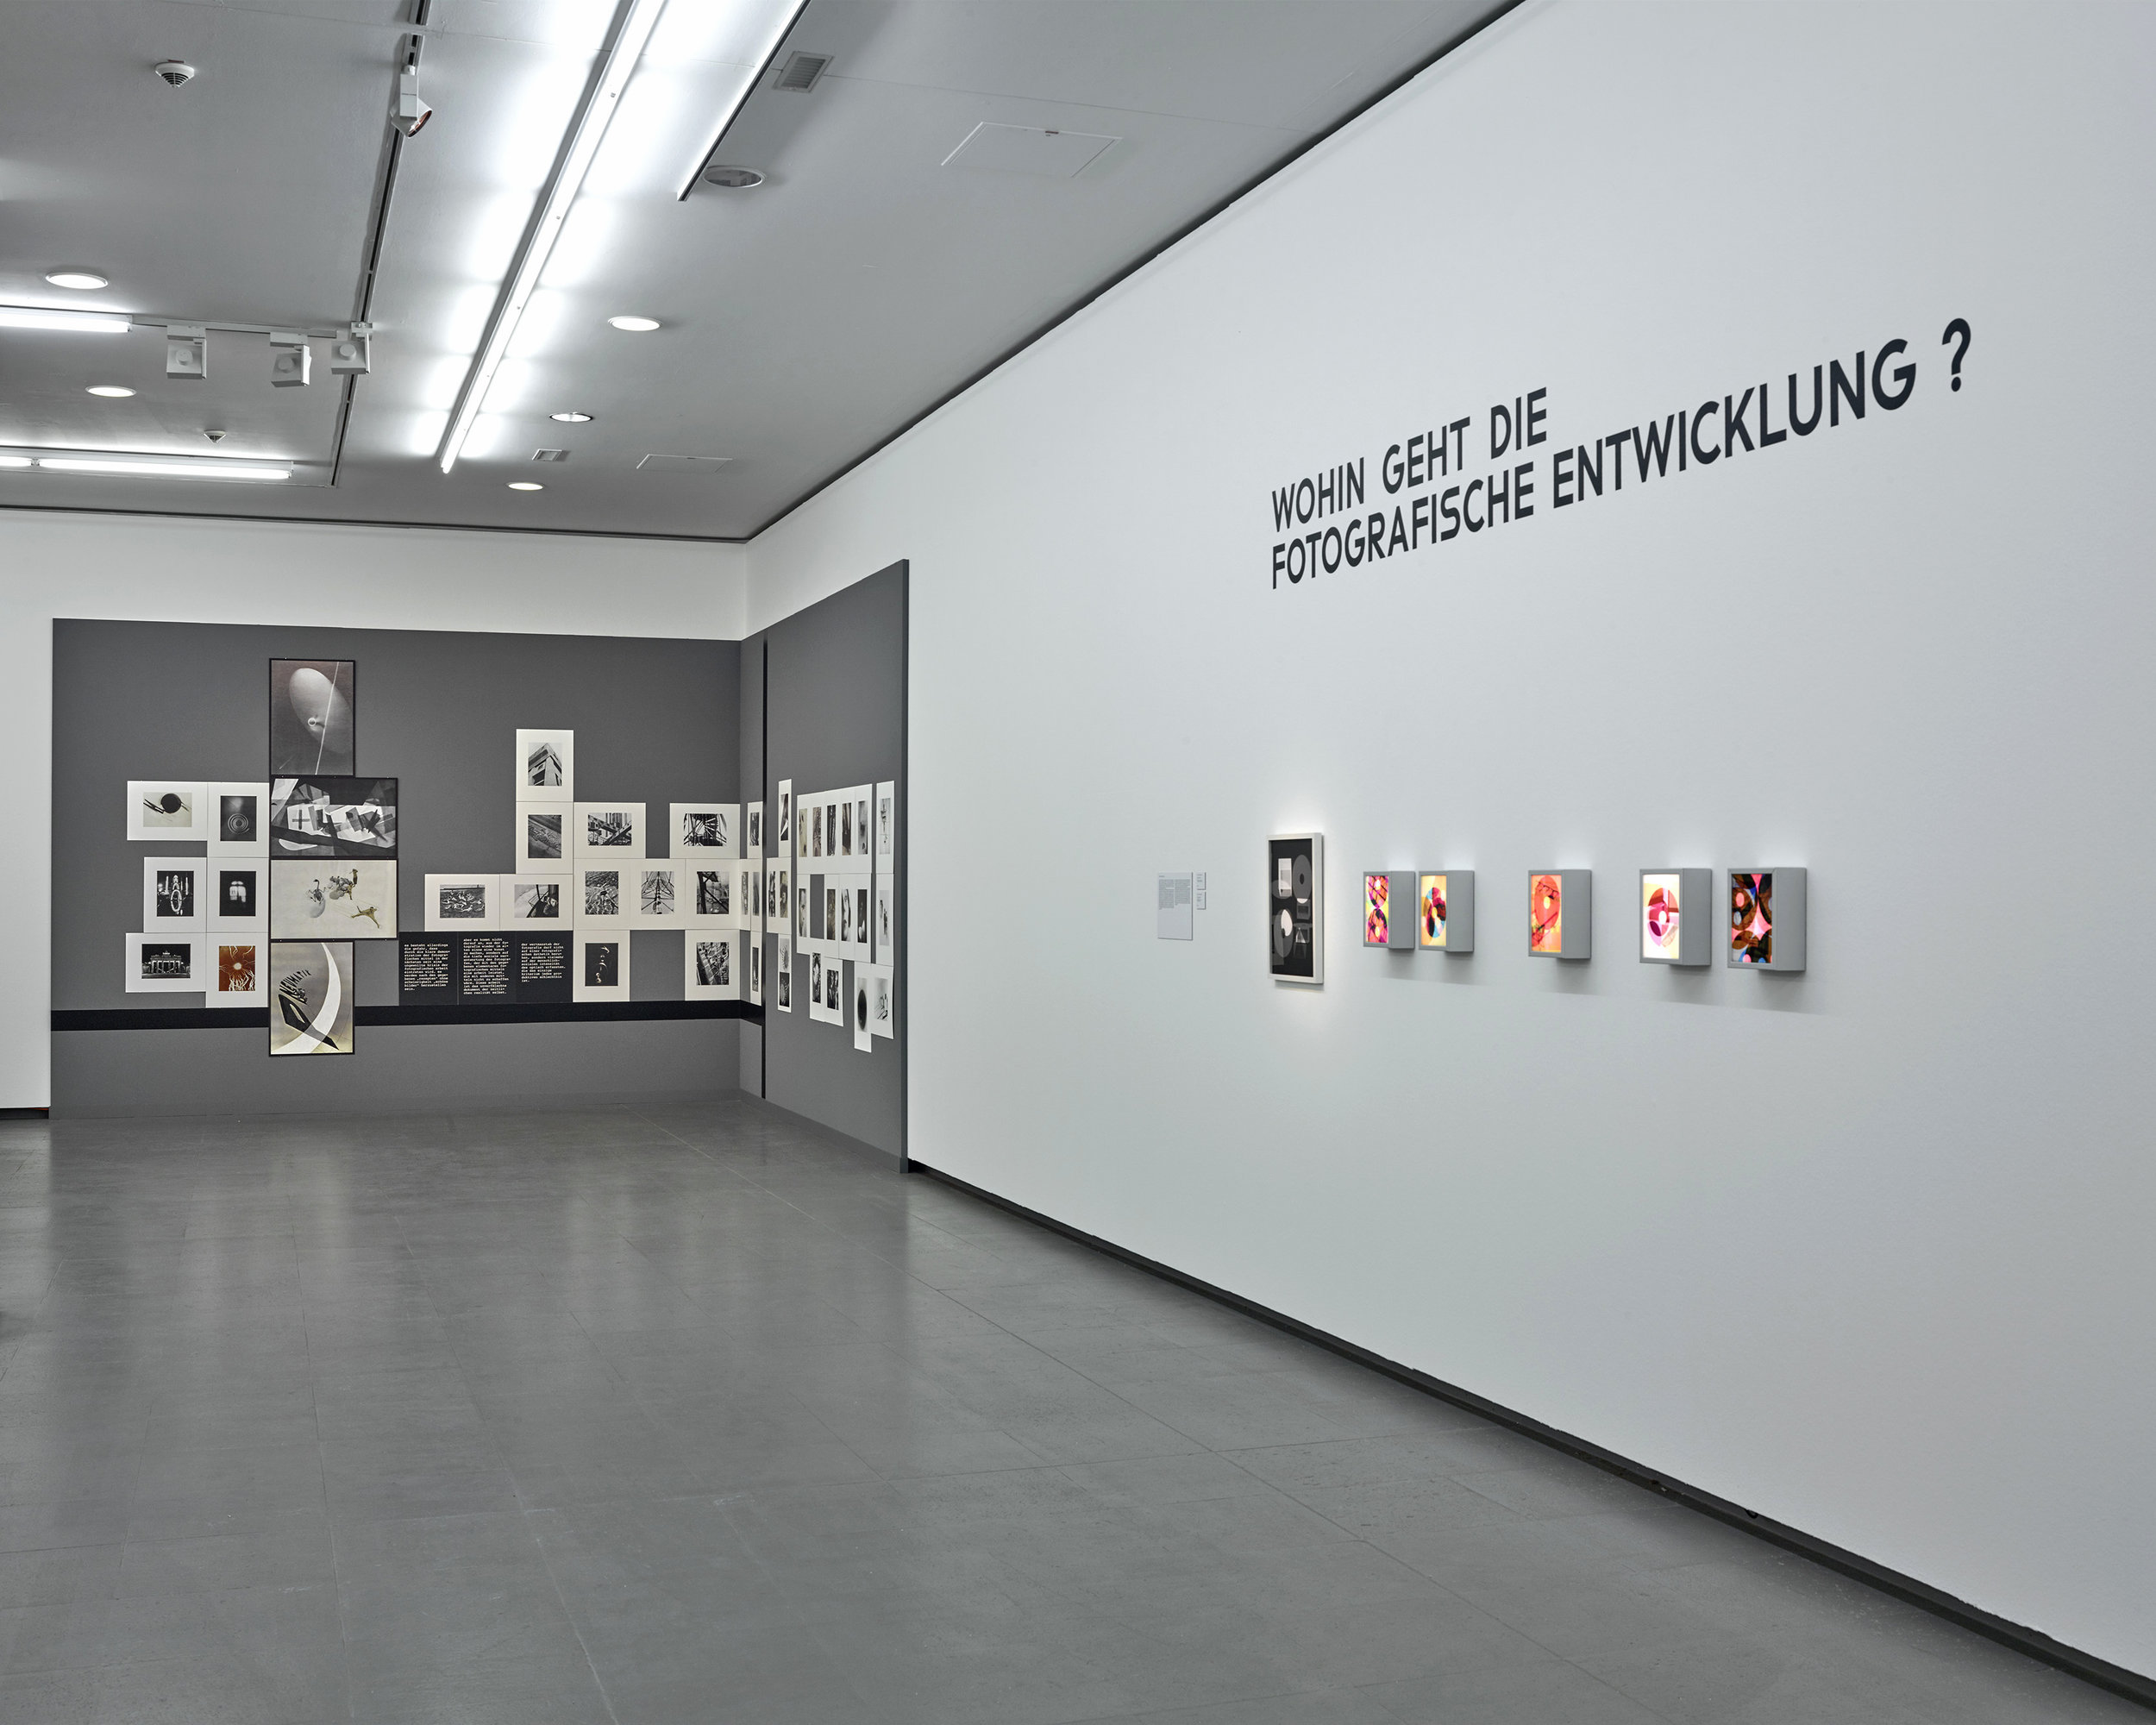  Bauhaus und die Fotografie / NRW Forum / Düsseldorf, Germany   